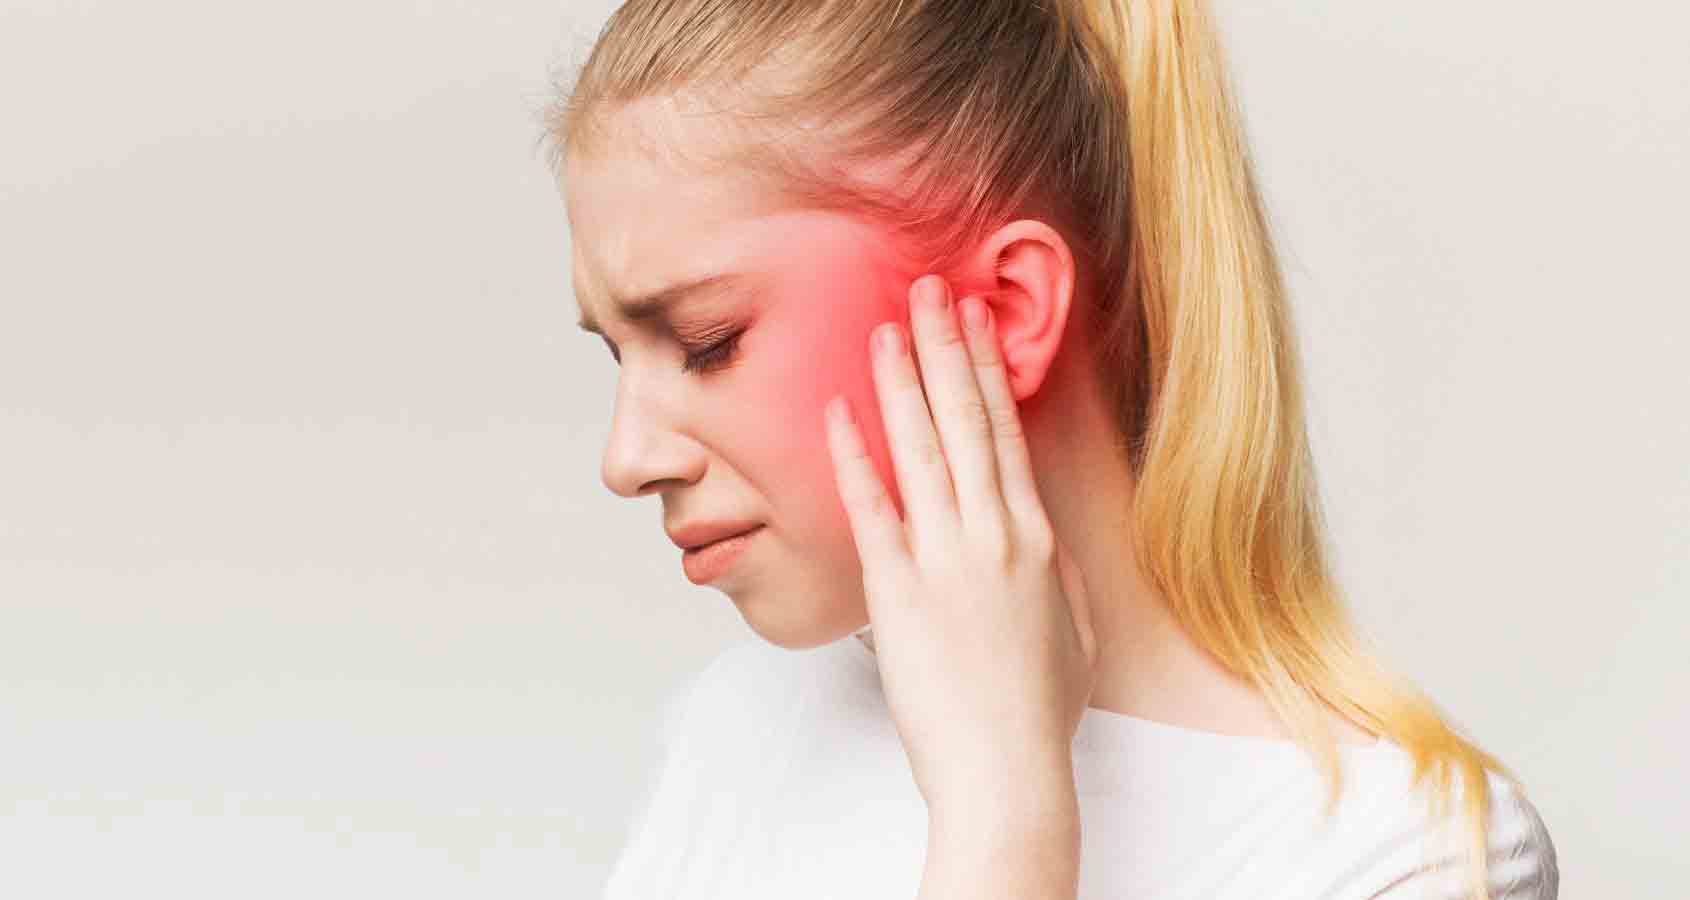 علت تیرکشیدن گوش چیست؟